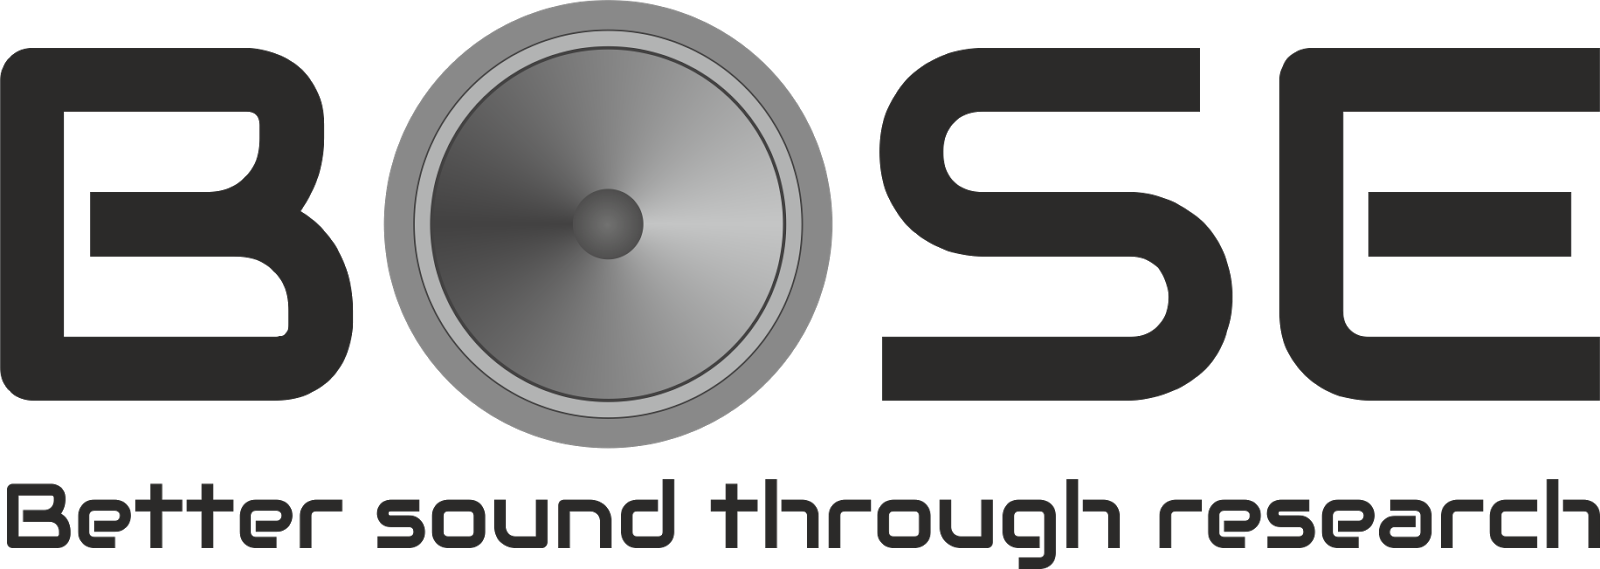 bose arojitsen better sound png logo #6677